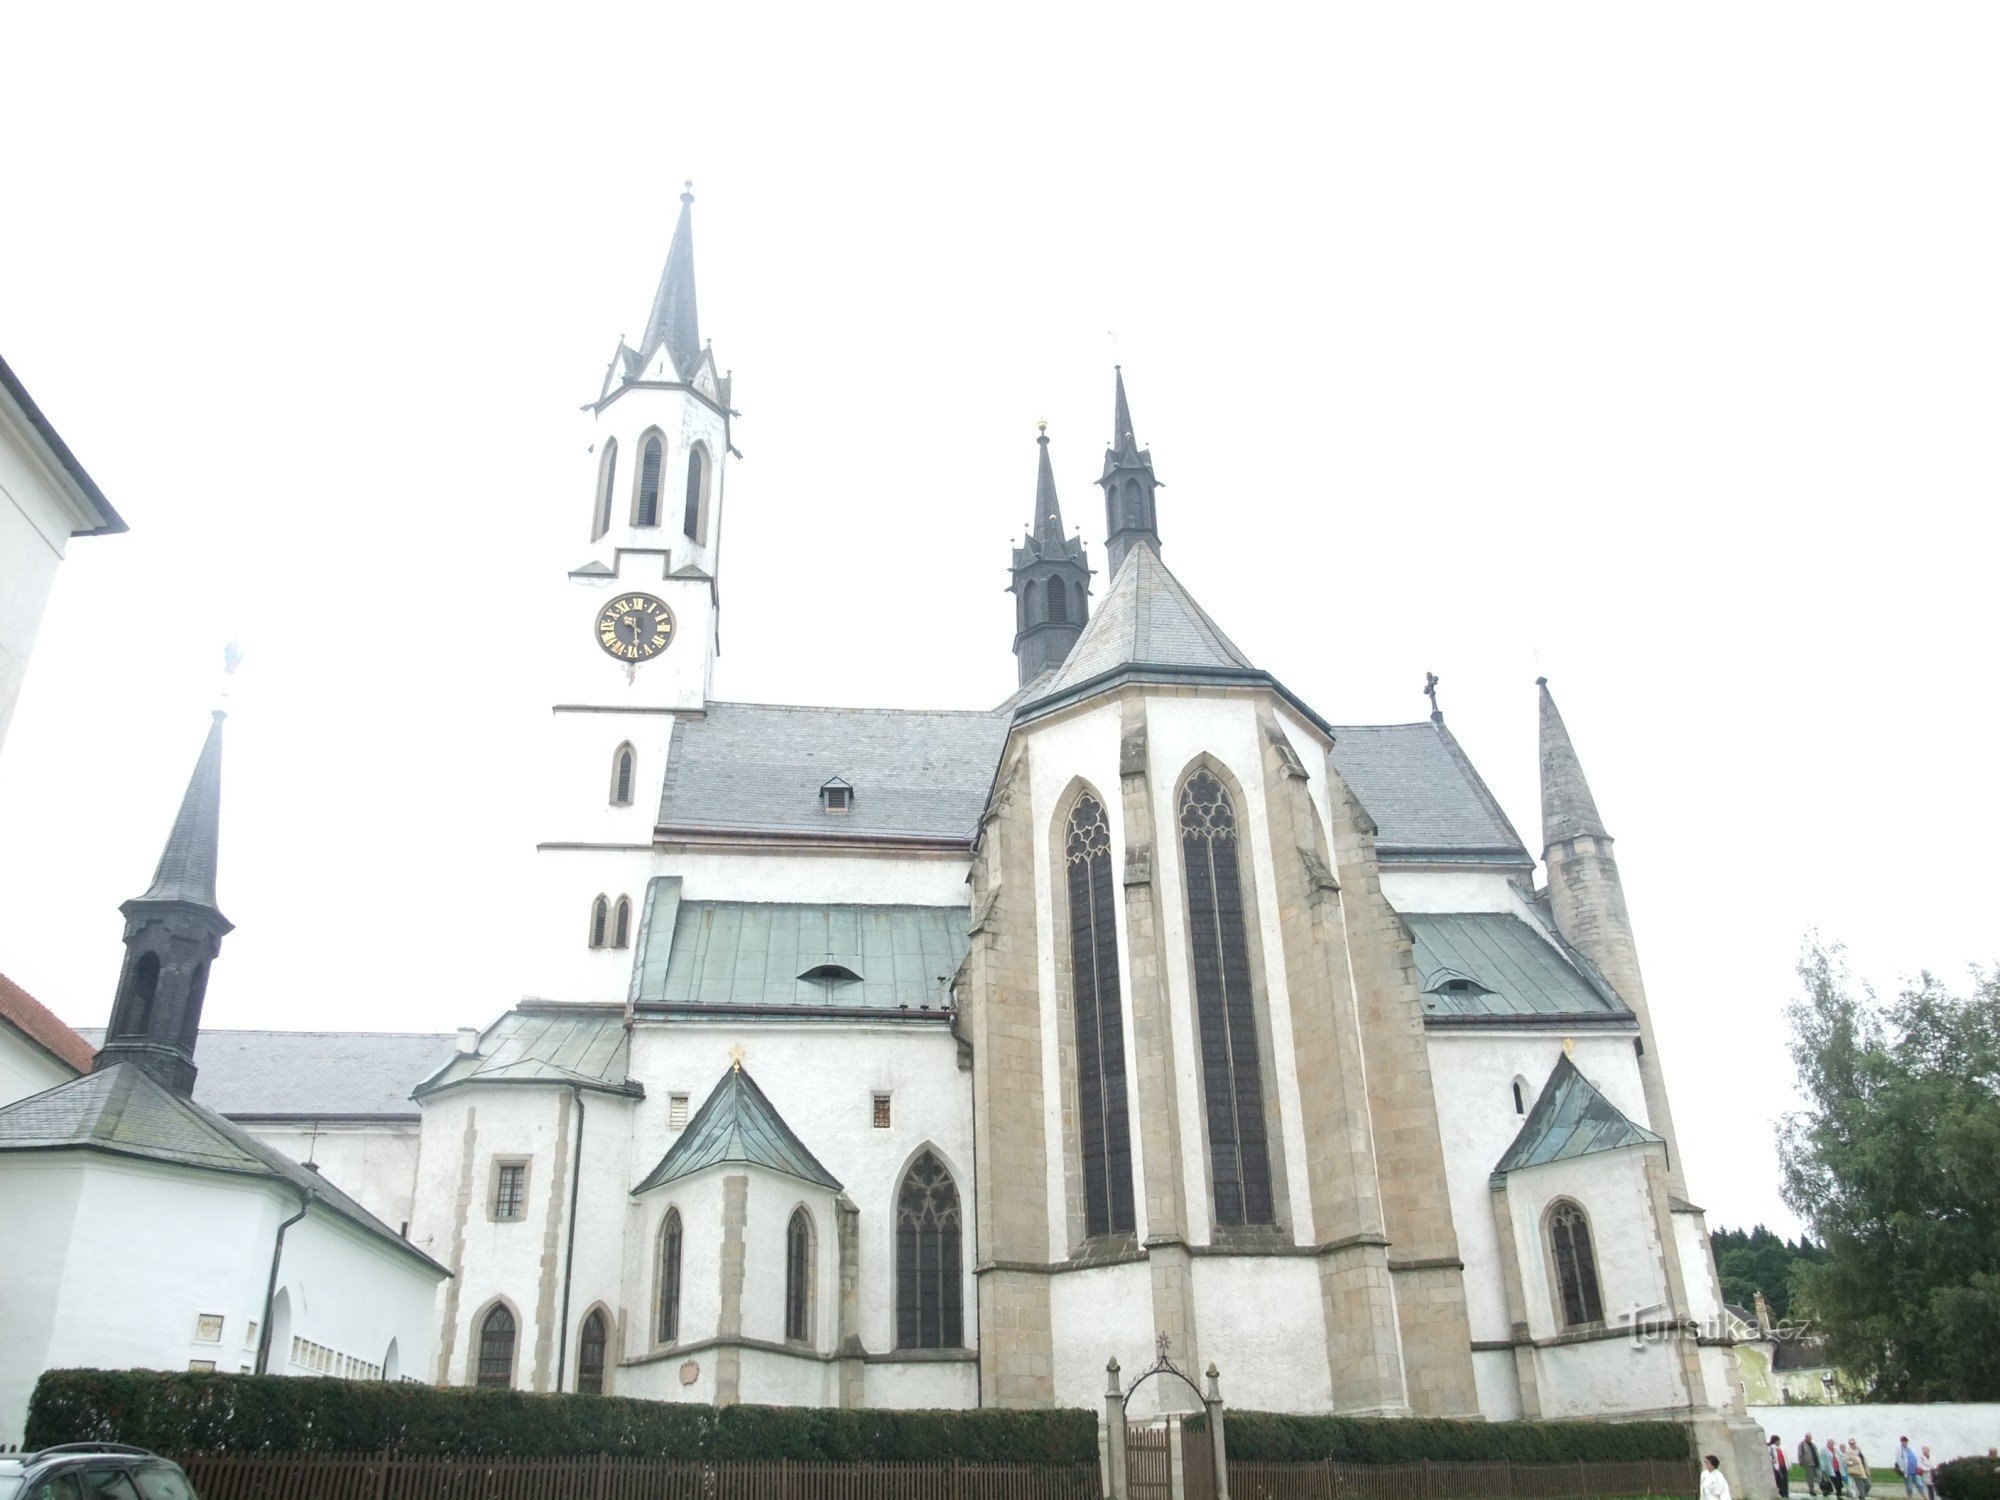 Cistercian monastery in Vyšší Brod